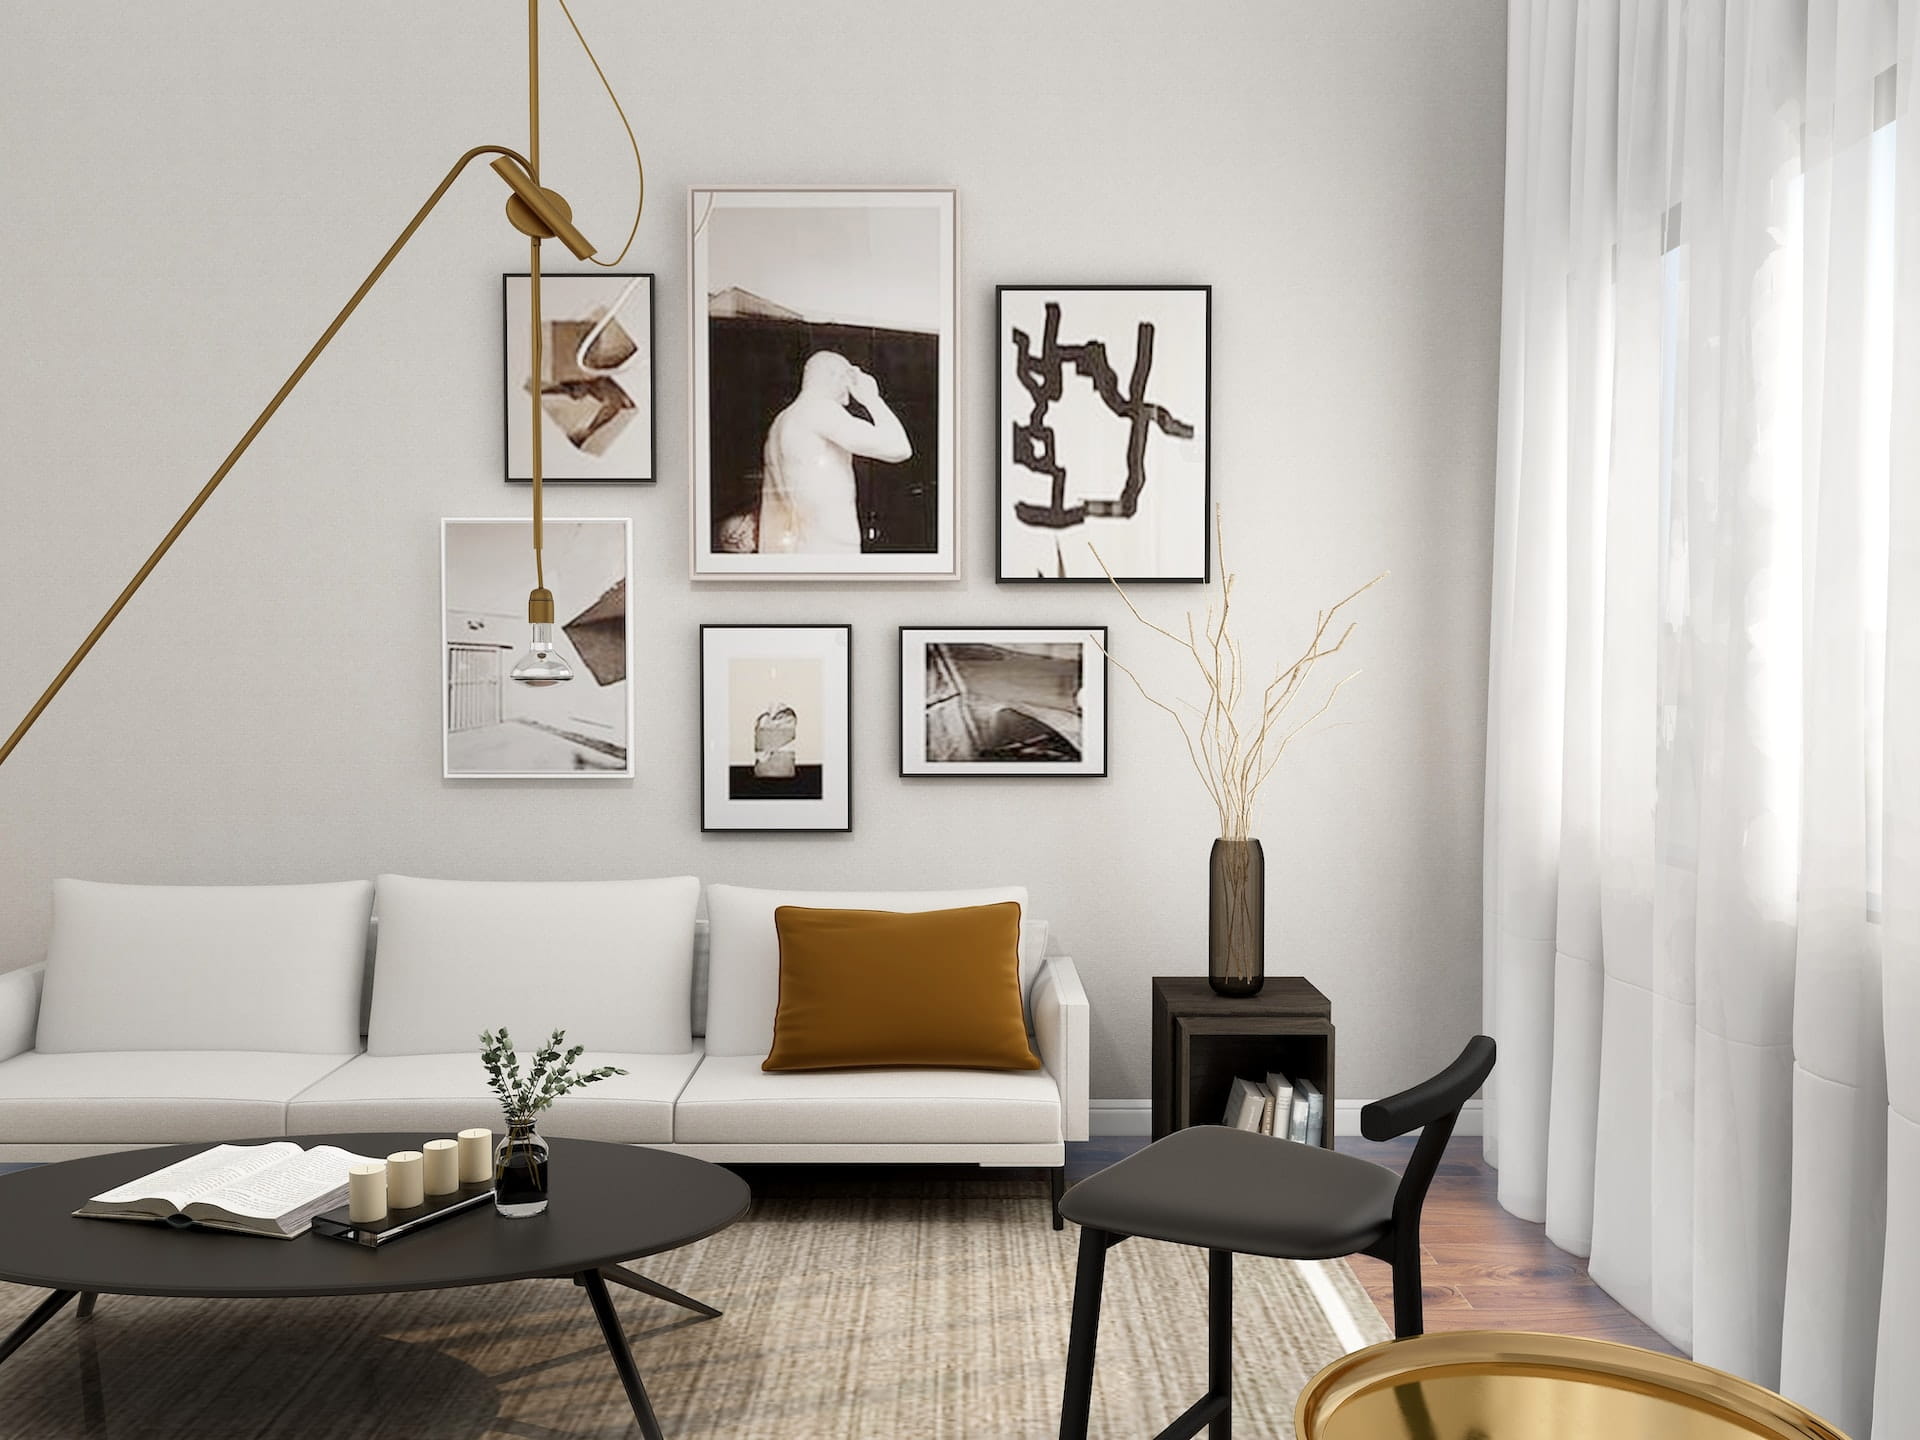 Interior Design - Living Area